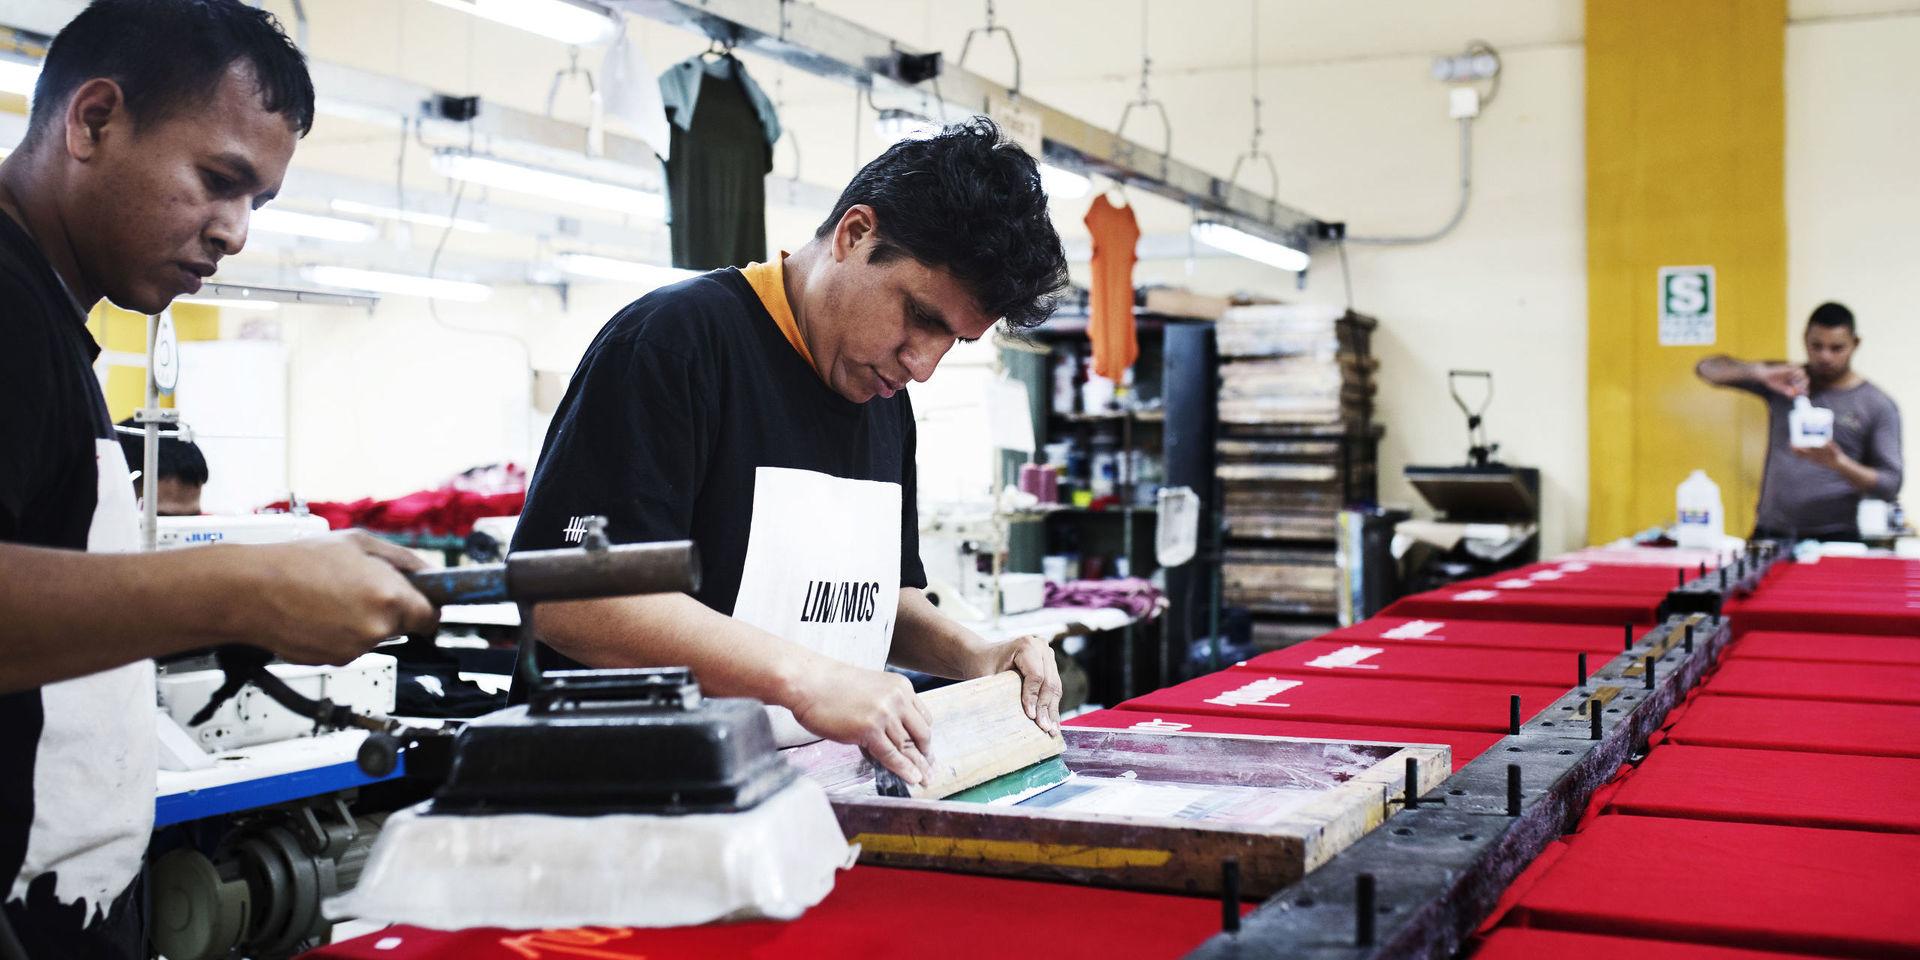 Med silkscreentryck märker Huaman de illröda tröjorna med texten ”peruano” (peruan). 